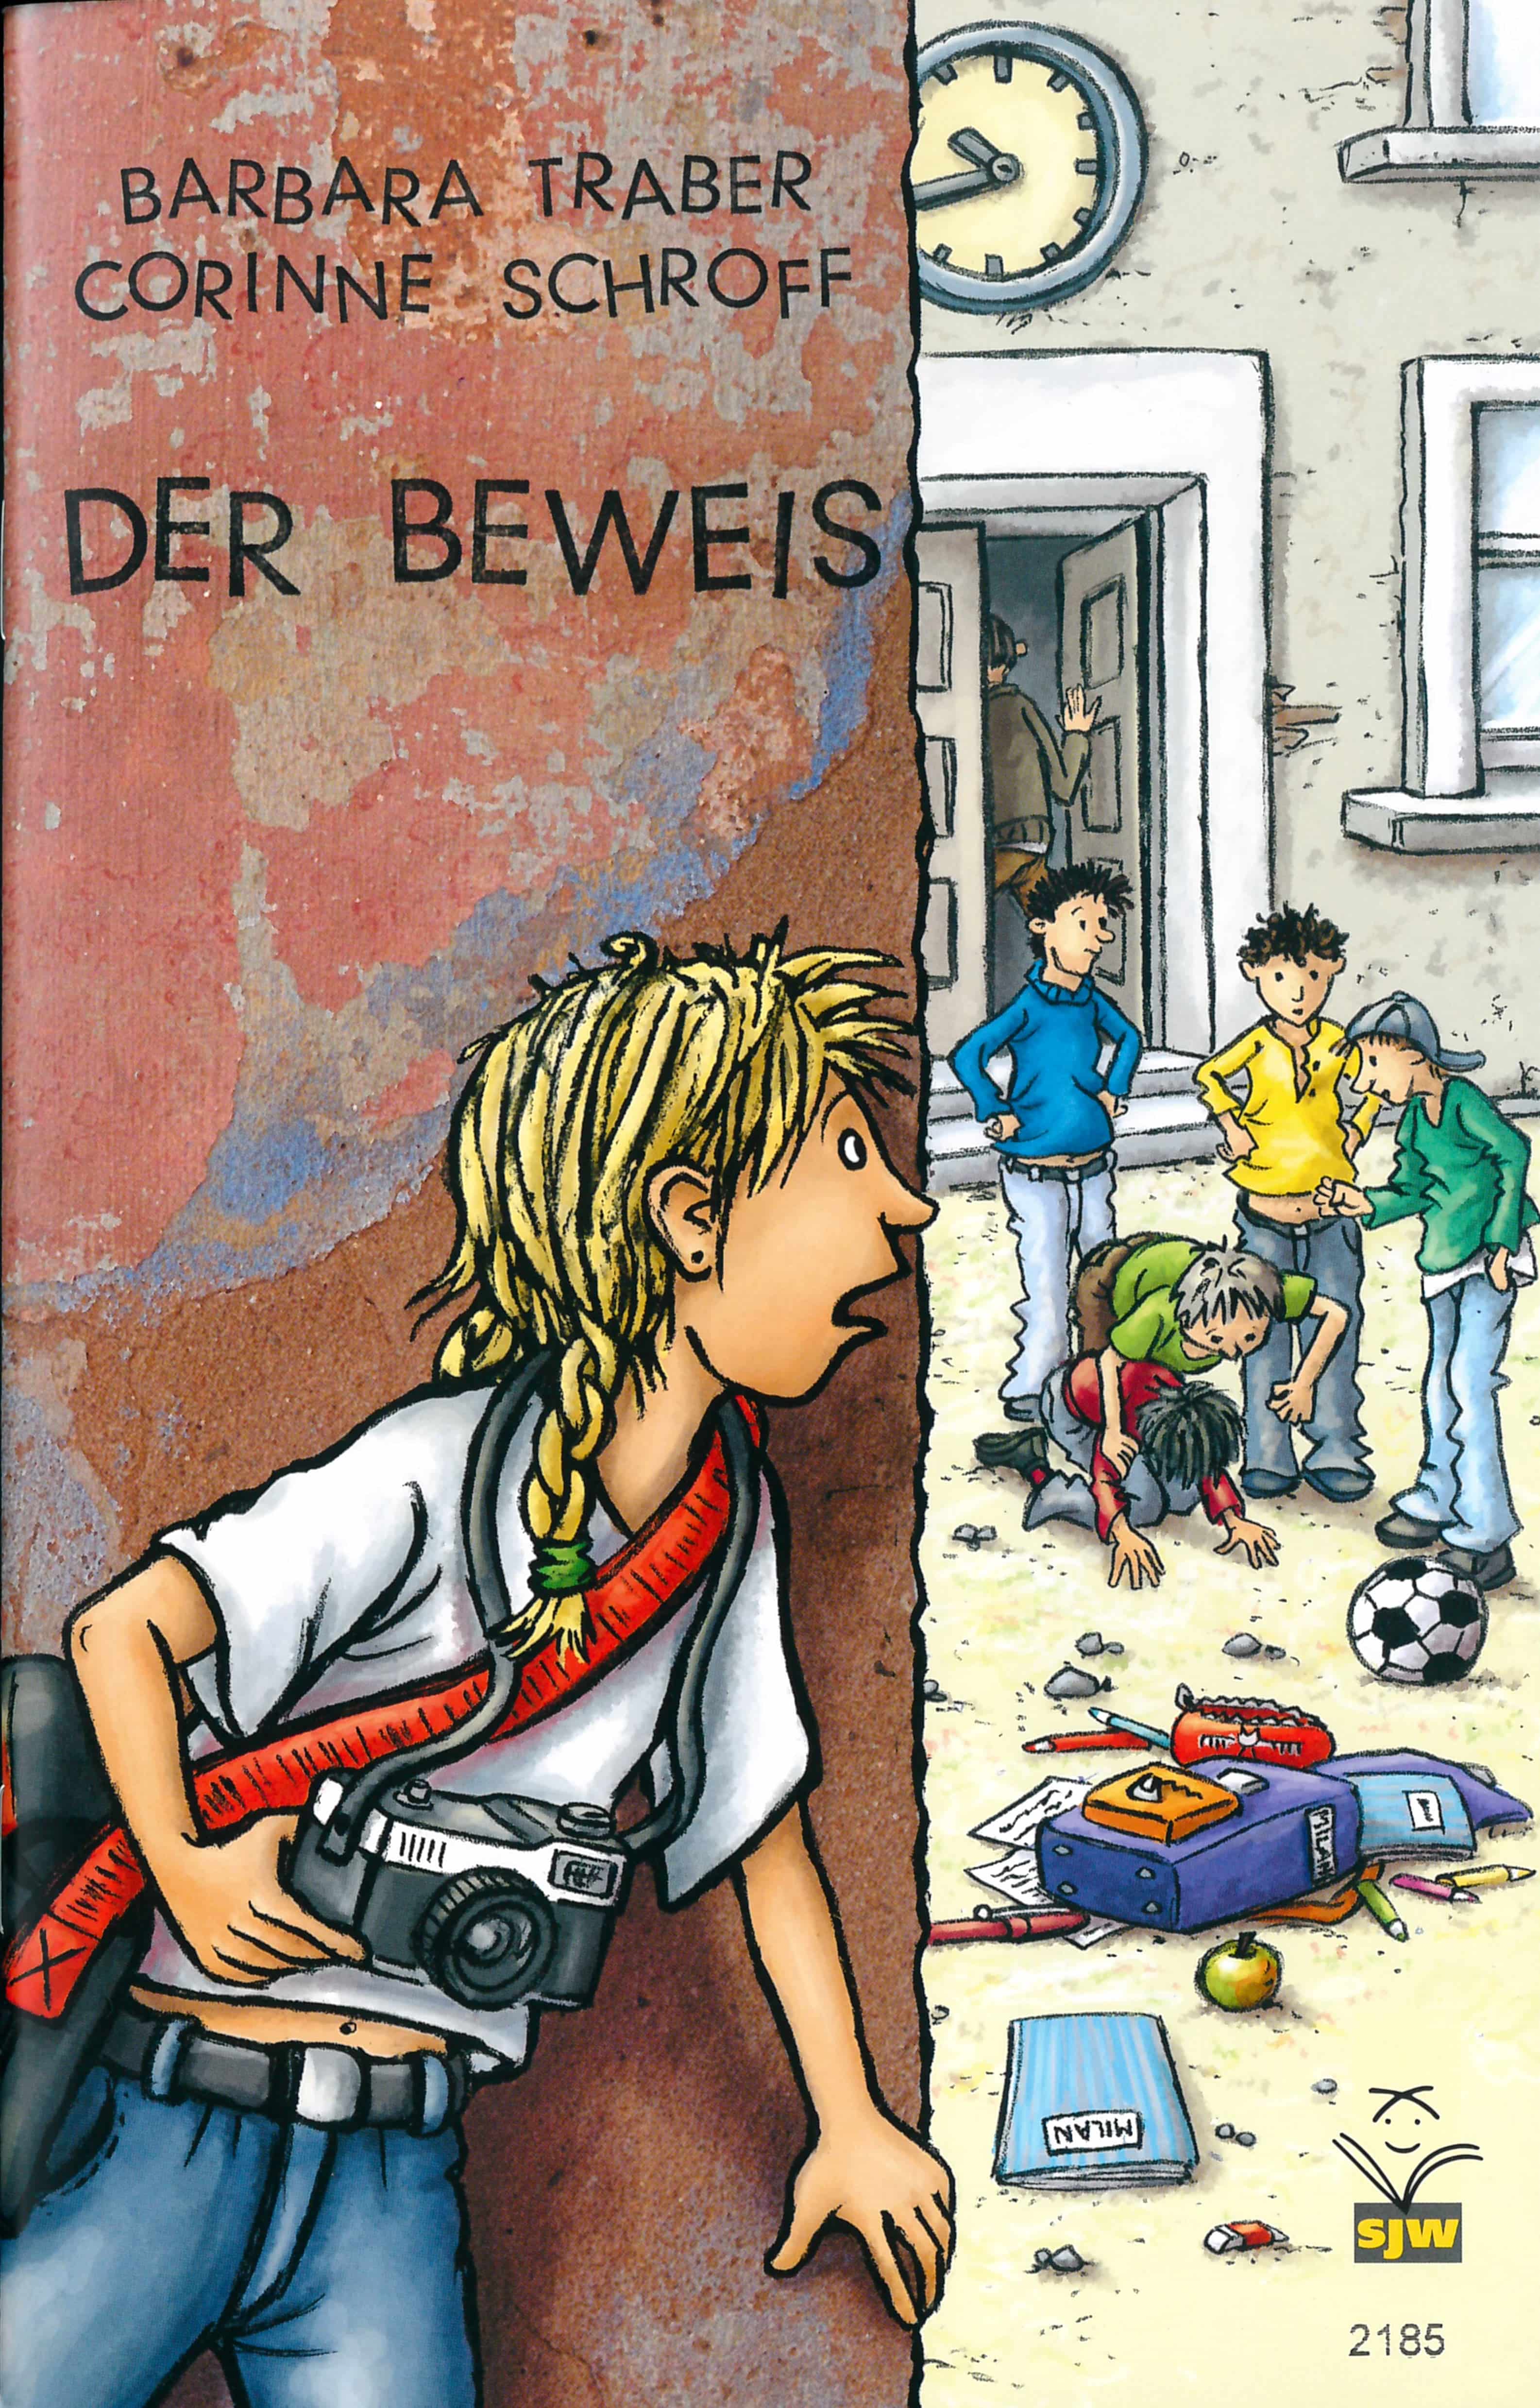 Der Beweis, ein Kinderbuch von Barbara Traber, Illustration von Corinne Schroff, SJW Verlag, Abenteuergeschichte